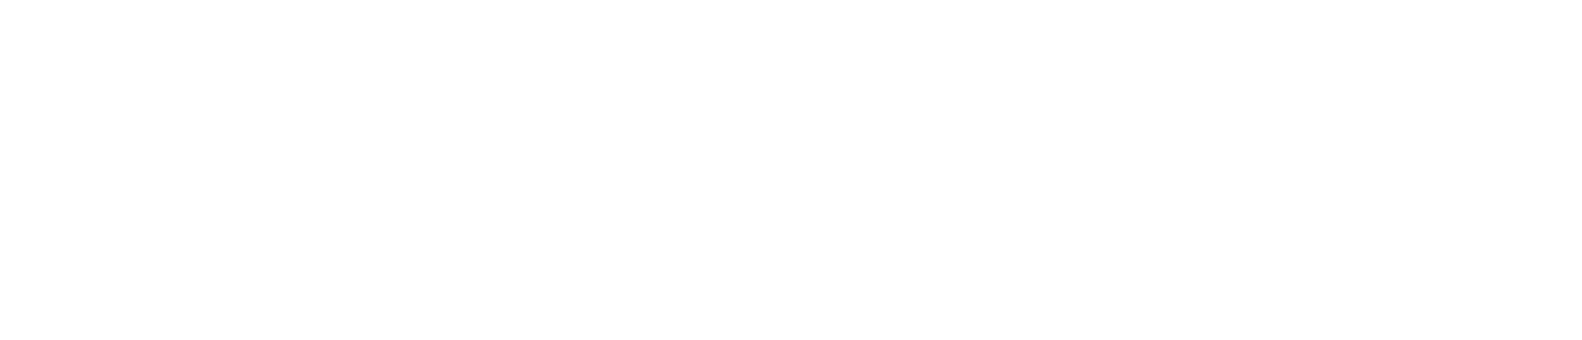 HBM Healthcare Investments logo large for dark backgrounds (transparent PNG)